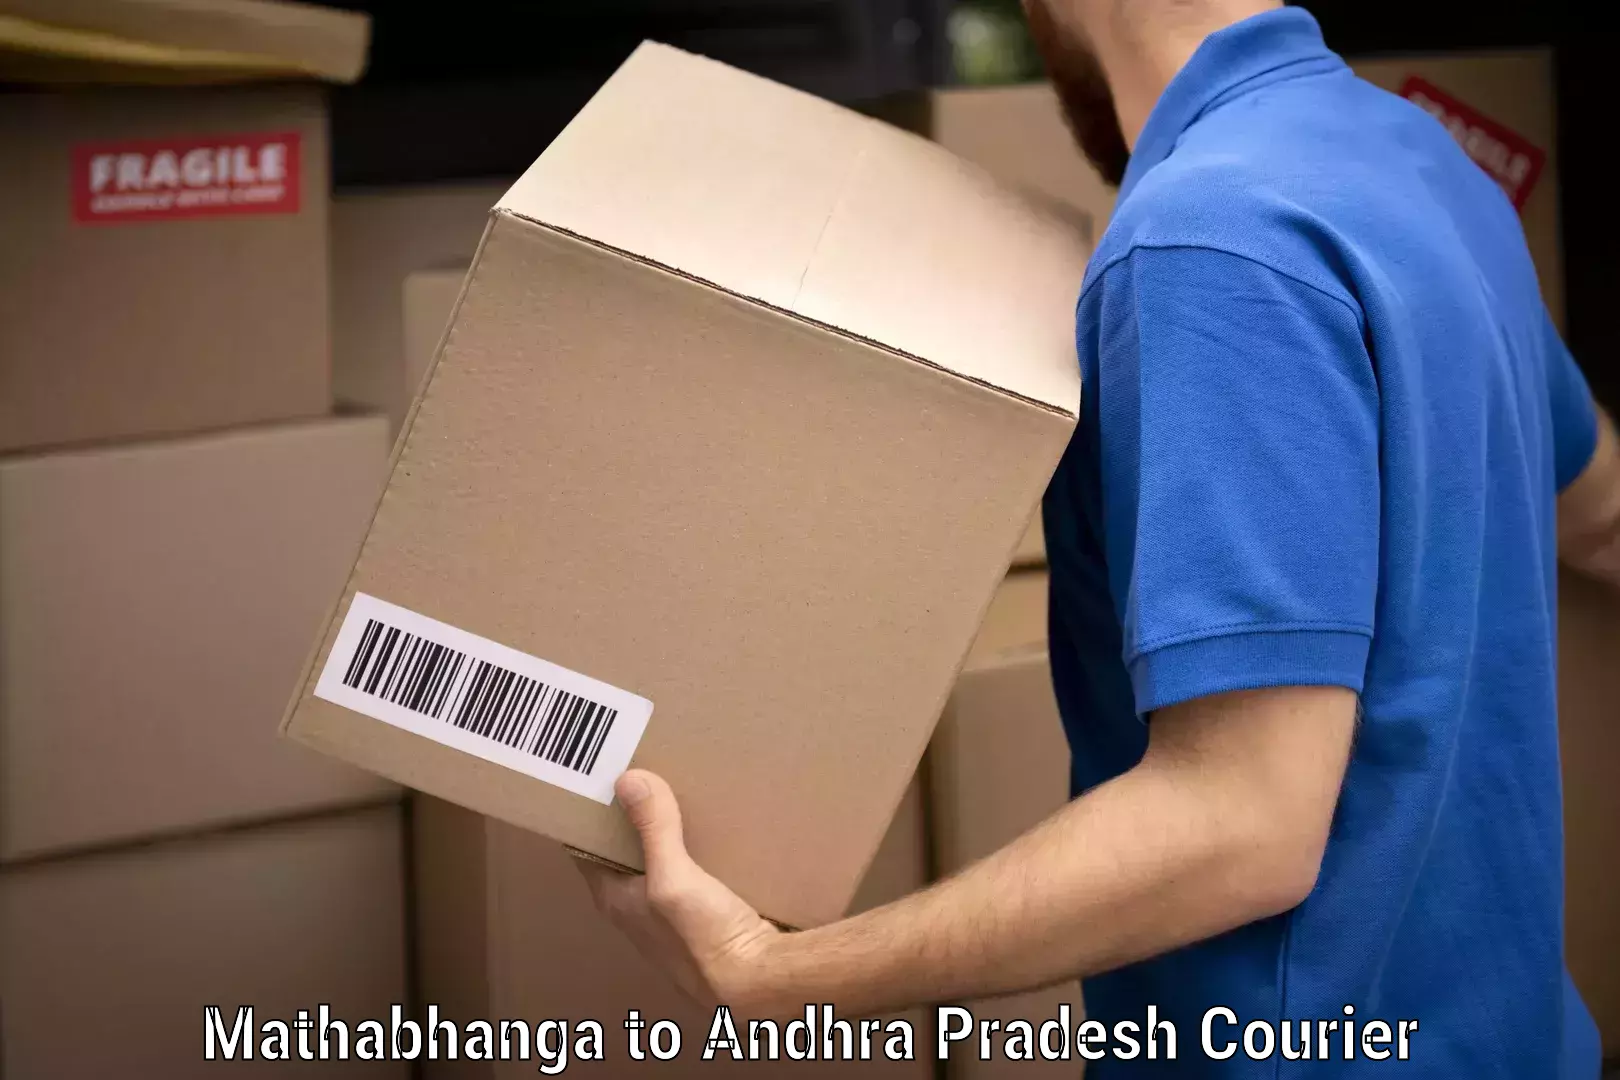 Furniture movers and packers Mathabhanga to Andhra Pradesh